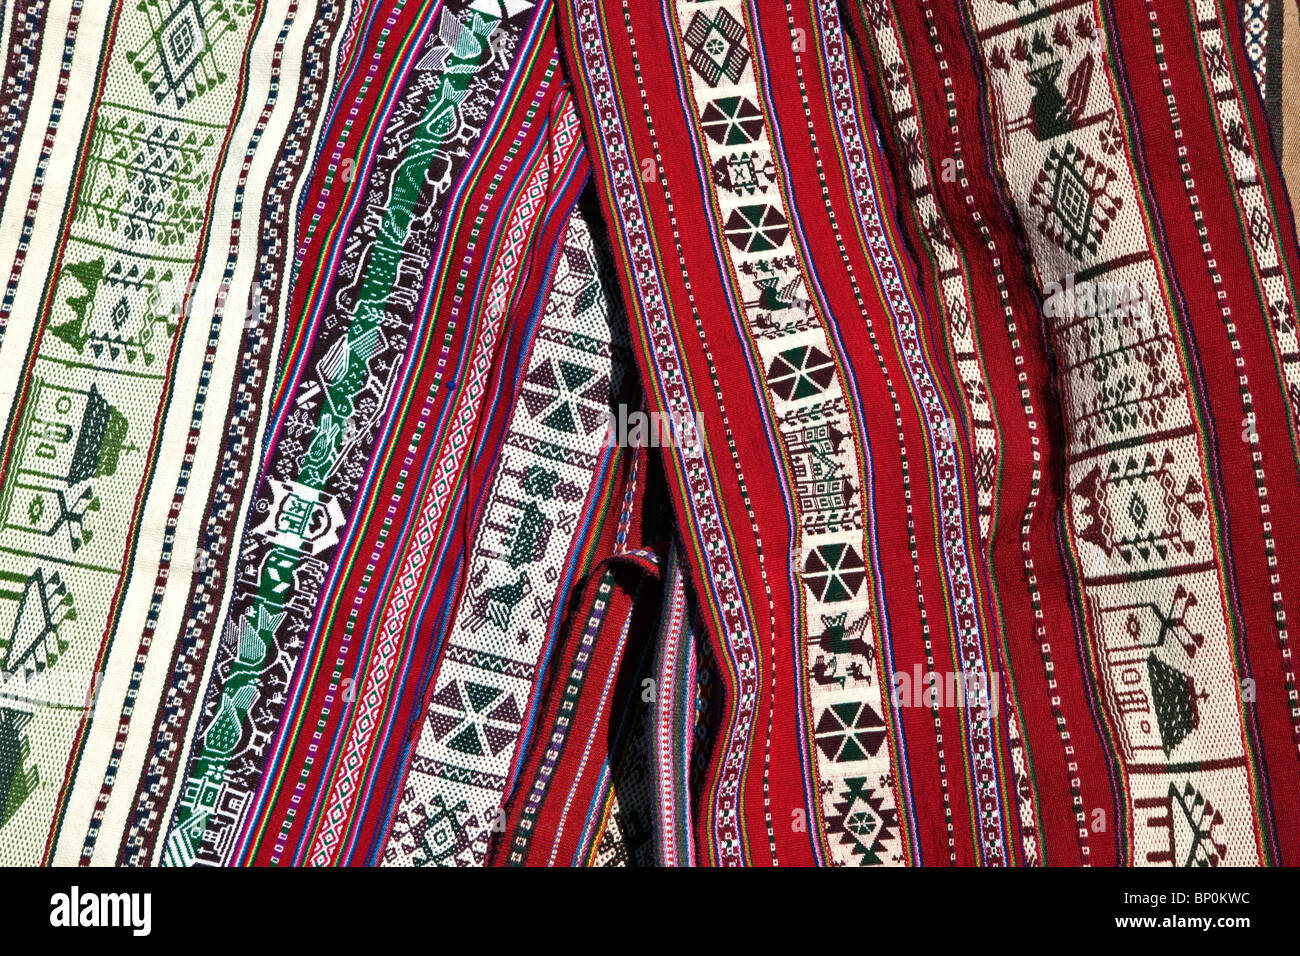 Perú, material de lana tejida a mano en colores y diseños favorecido por las personas de habla quechua de Taquile. Foto de stock